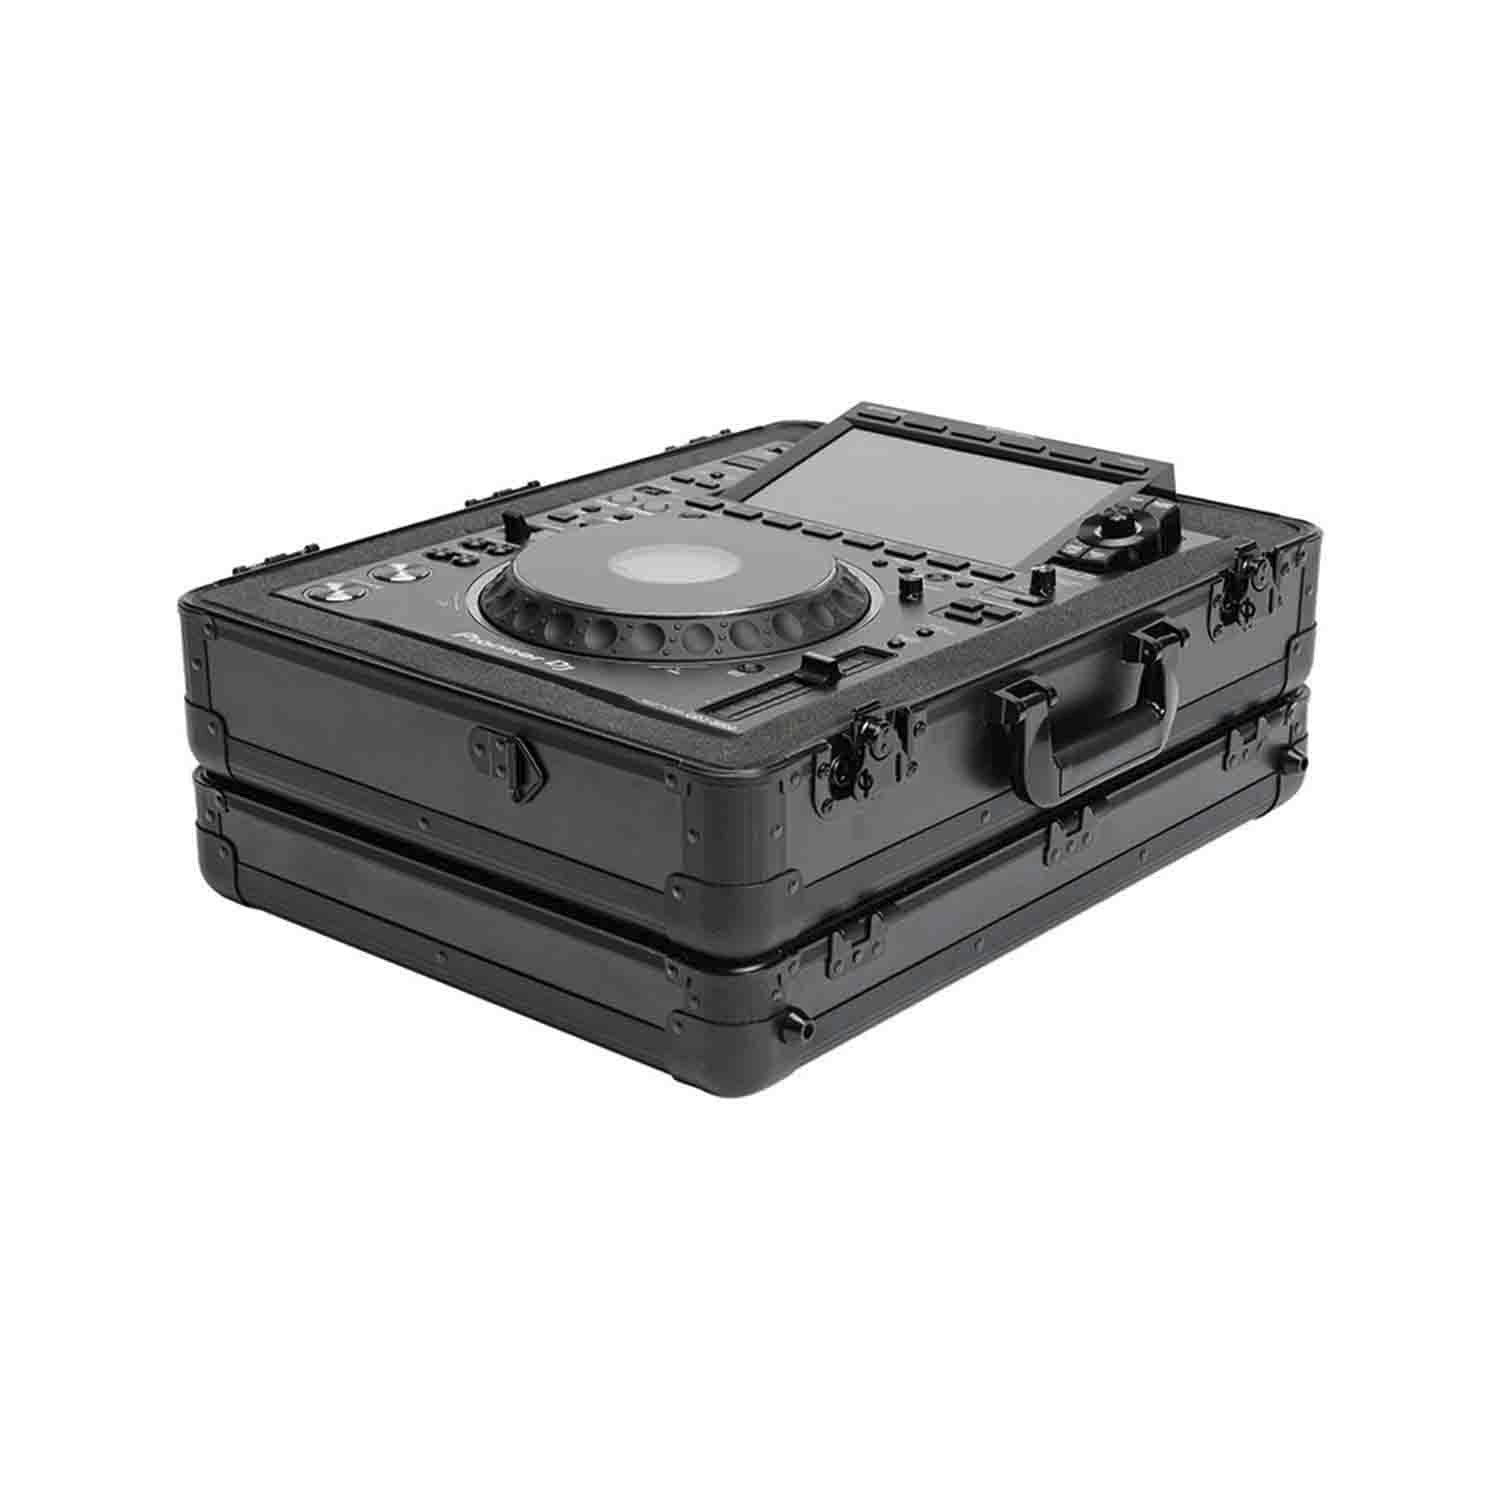 Magma MGA41104 DJ Carrying Case for Pioneer CDJ/Mixer - Hollywood DJ